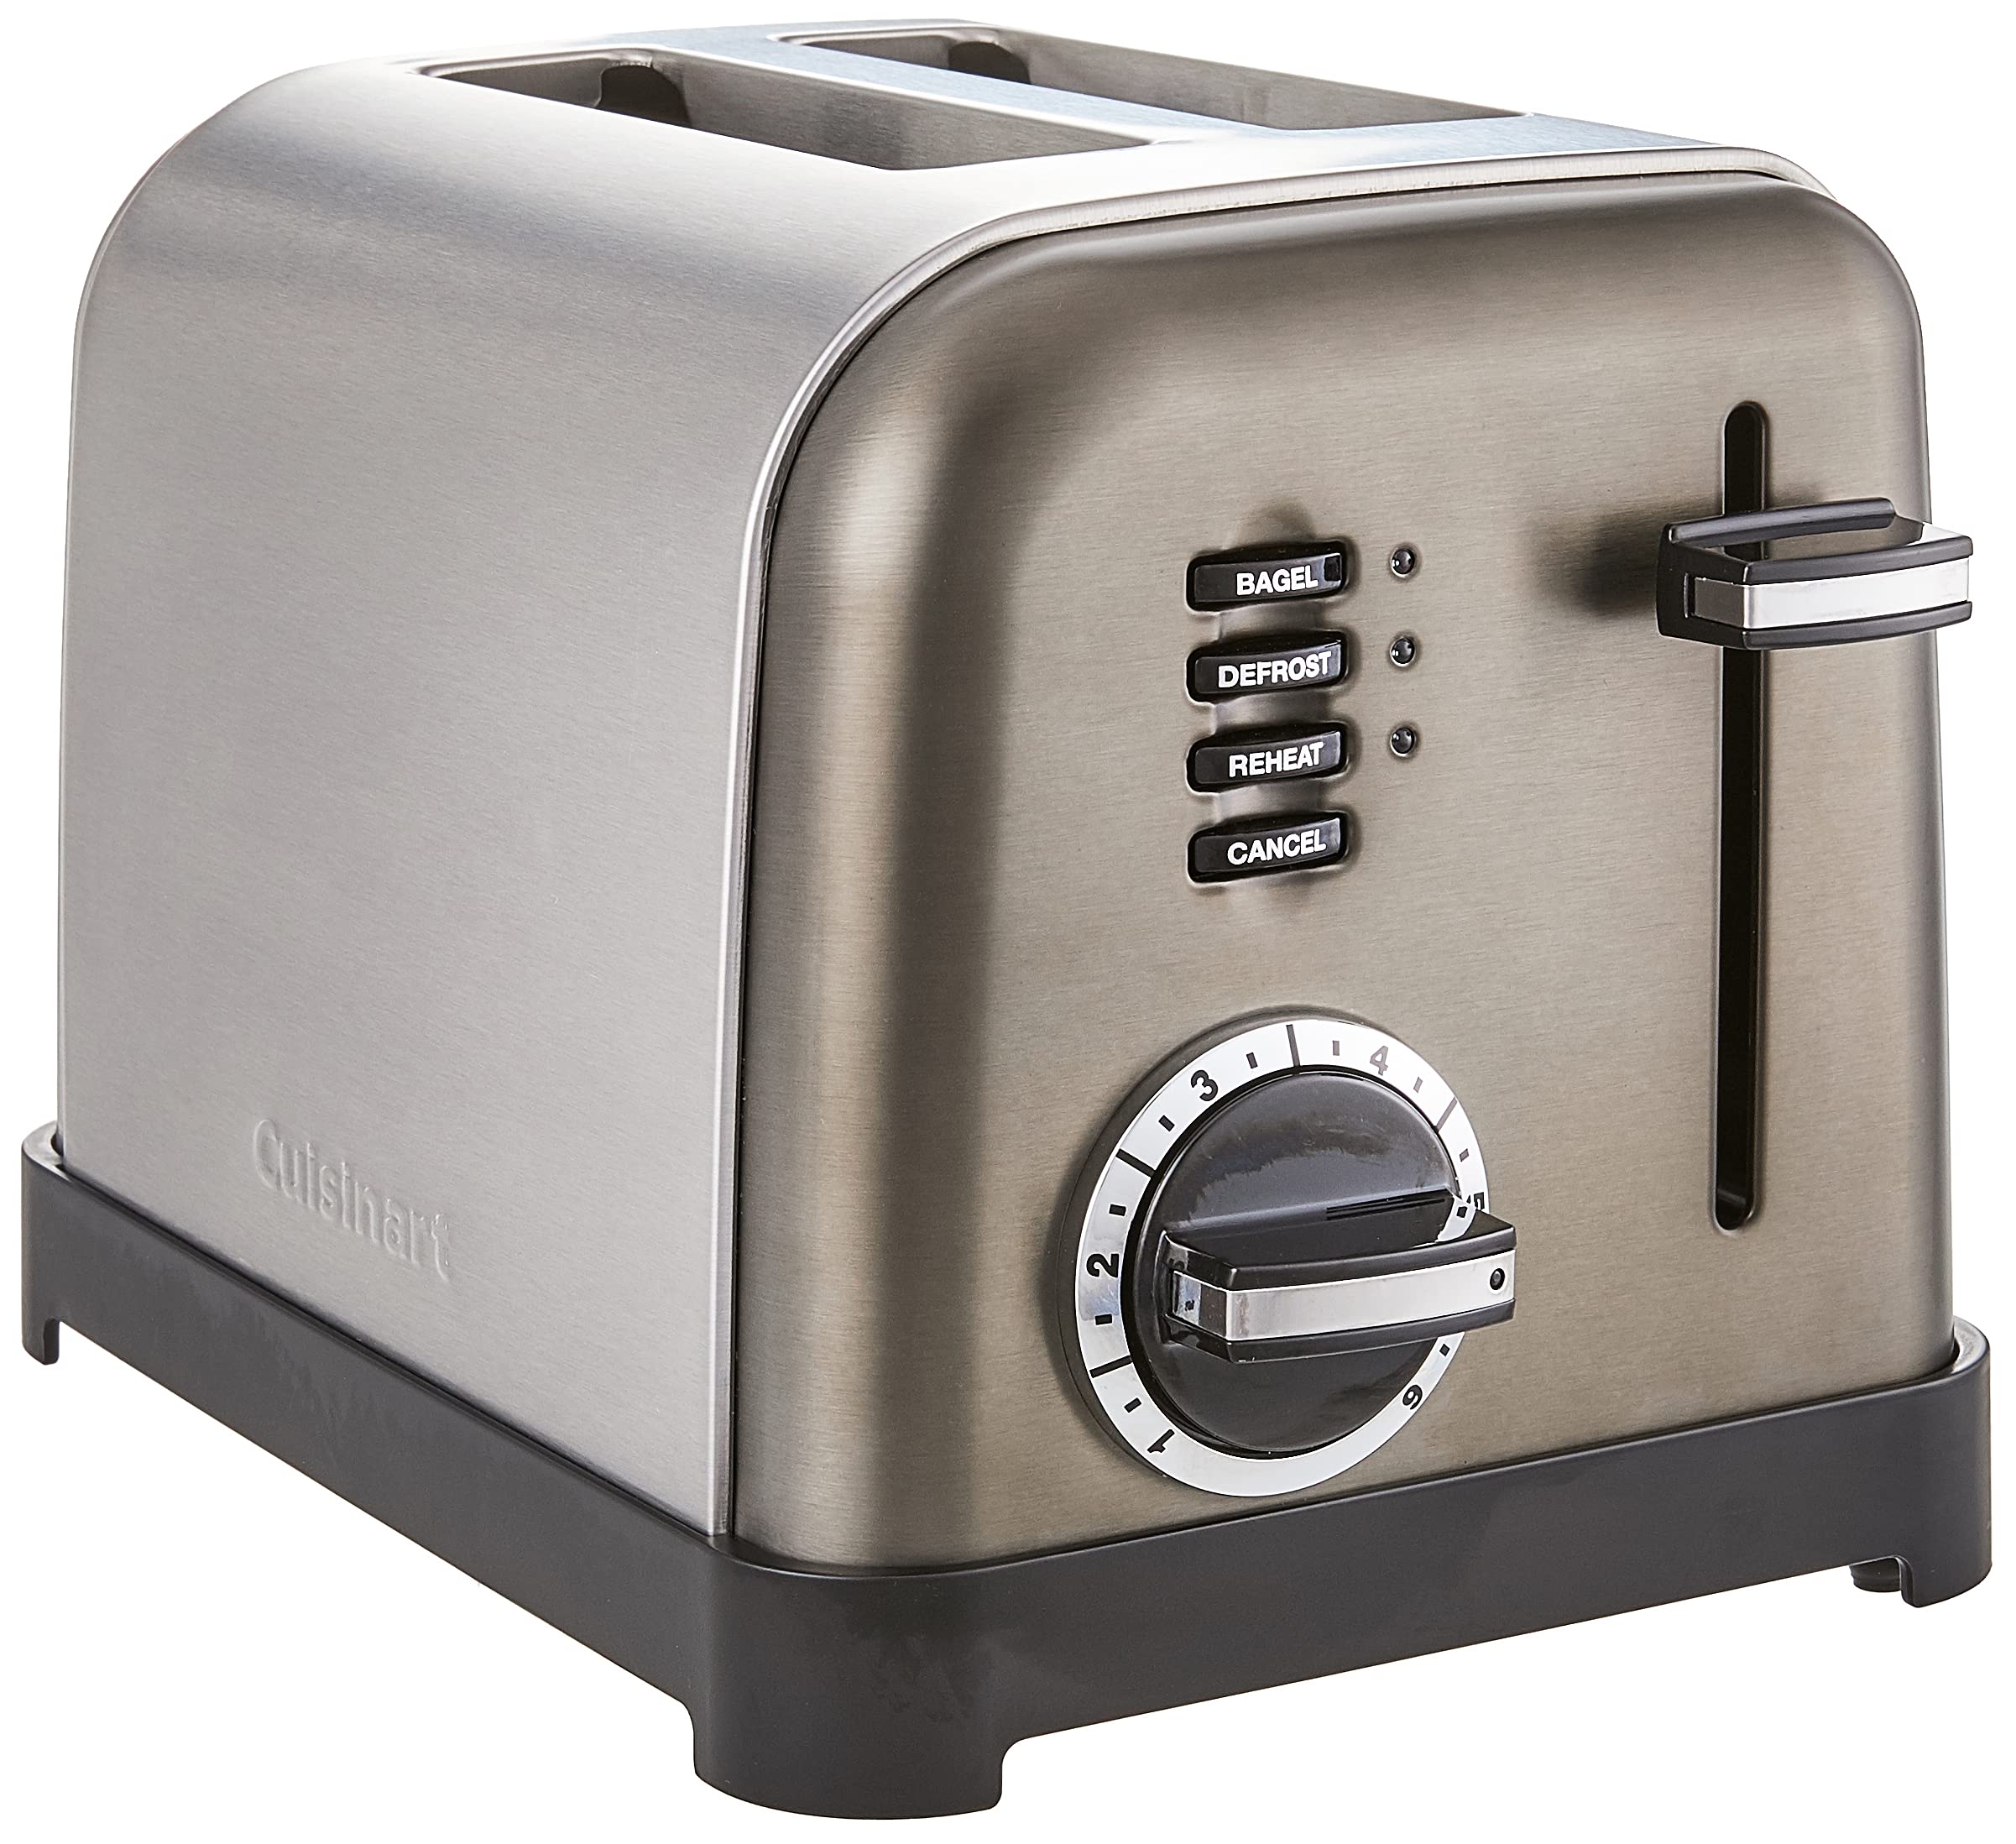 Cuisinart CPT-180 Metal Classic 4-Scheiben-Toaster